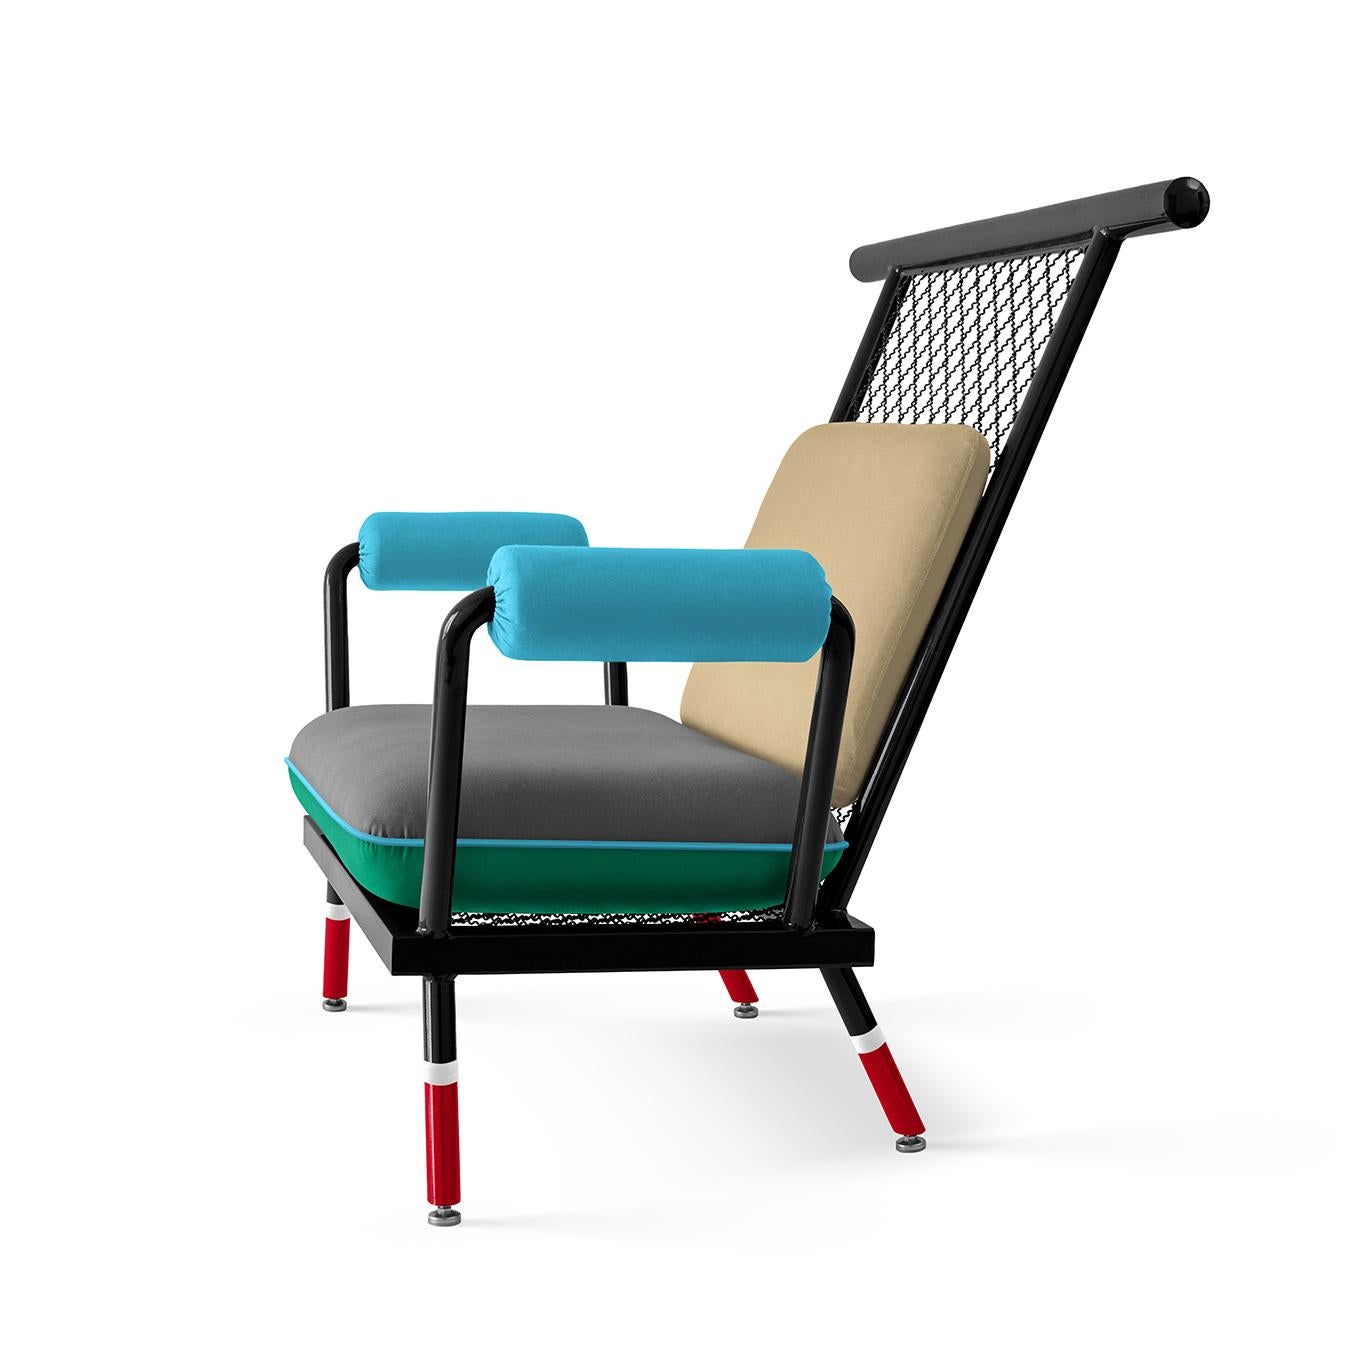 Ehrenvolle Erwähnung beim European Product Design Award: Kategorie Innenraumprodukte.

Die Hauptinspiration für den Stuhl PK6 stammt von Standard-Metallstrukturen, die für sekundäre Architekturprojekte verwendet werden.
Dieses Projekt verwandelt